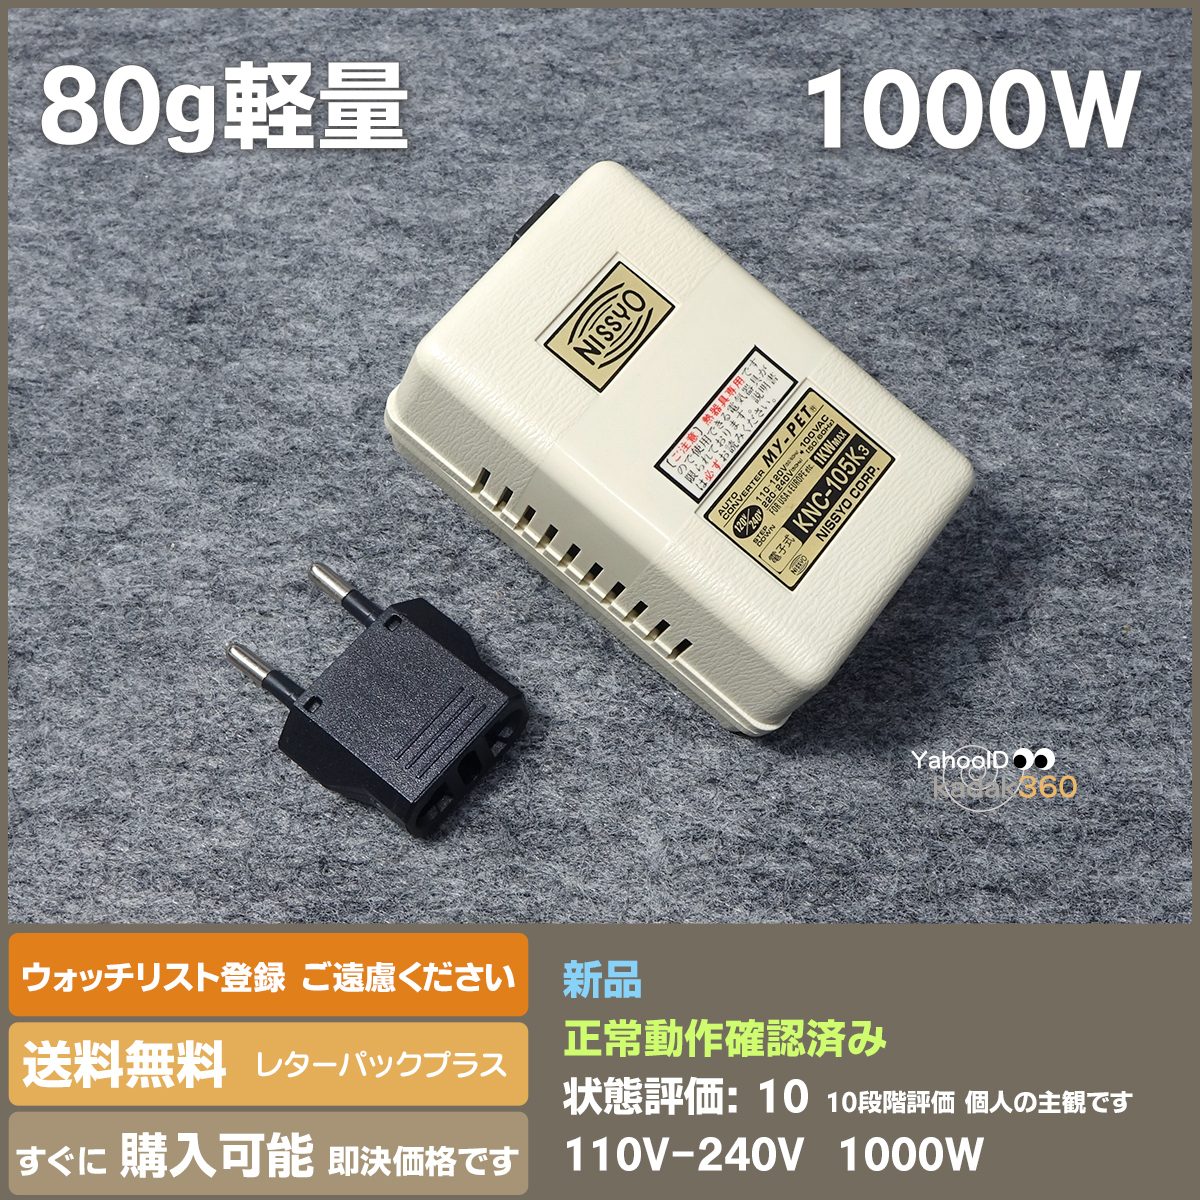 即決 送料無料 新品 NISSYO 海外旅行用変圧器 小型80g 1000W KNC-105K3 ドライヤー・電気ポットに_画像1